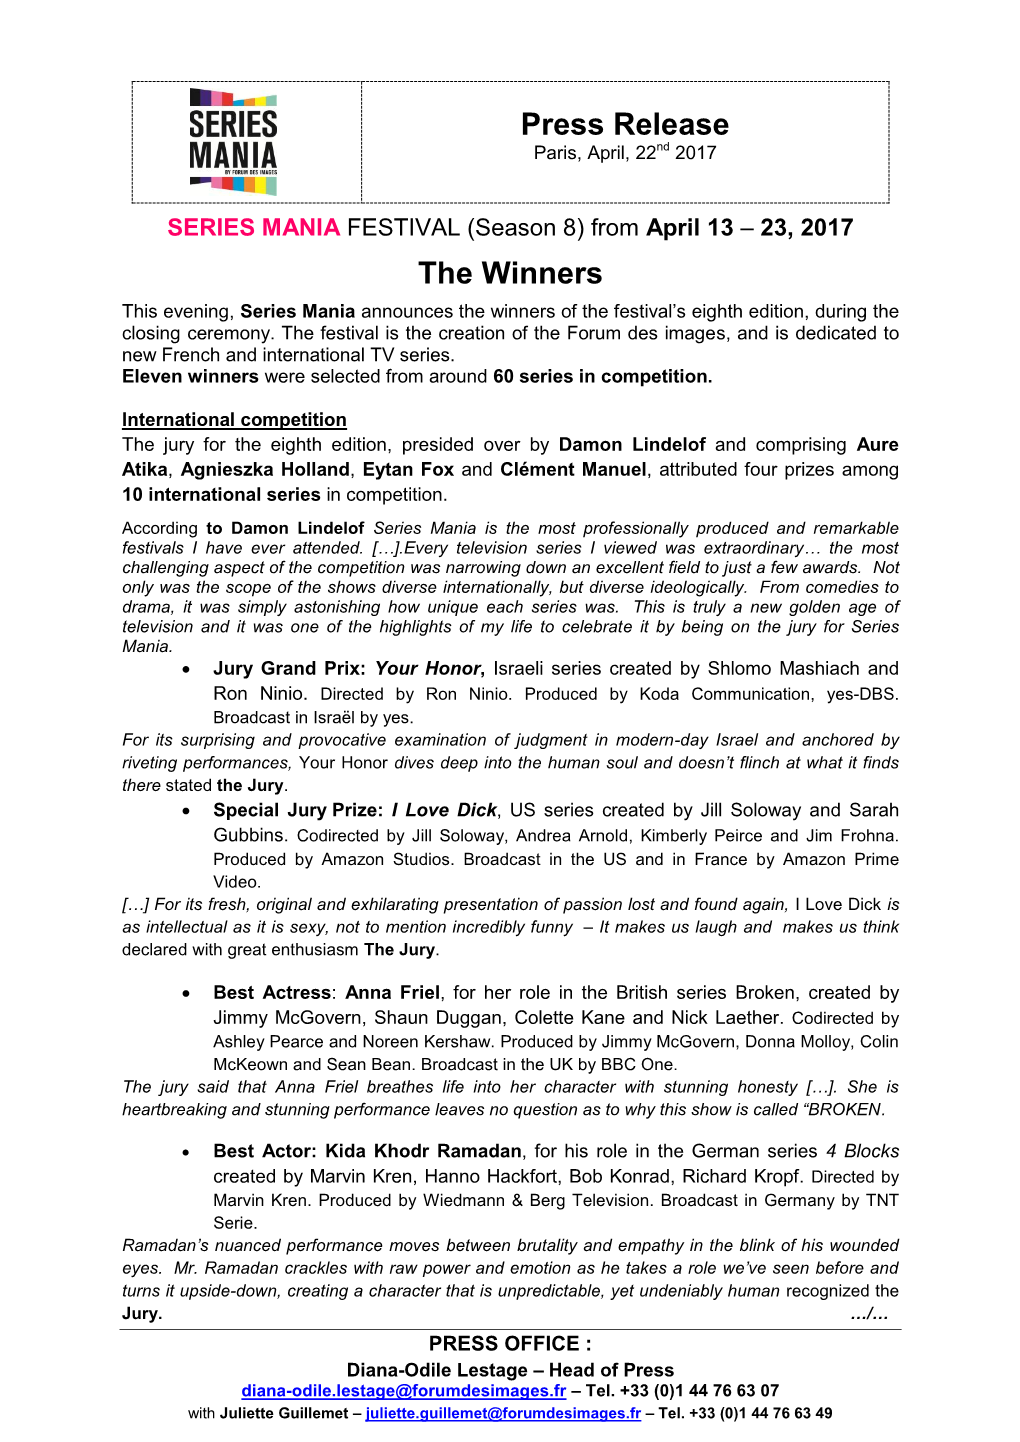 Press Release the Winners